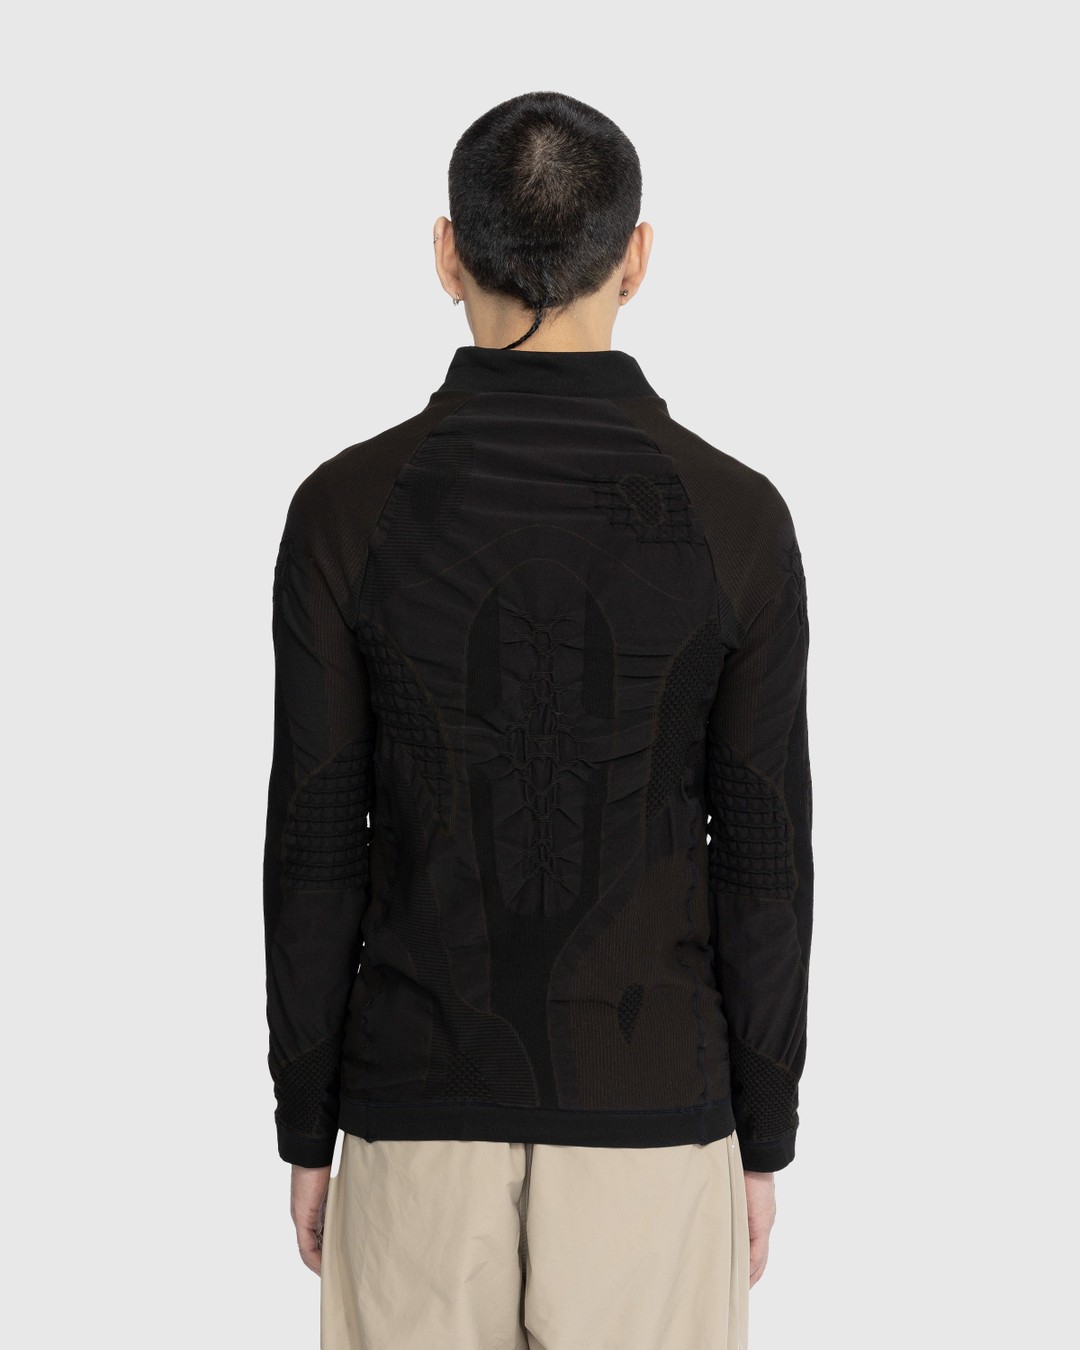 ROA – Half Zip 3D Knit Black - Knitwear - Black - Image 3